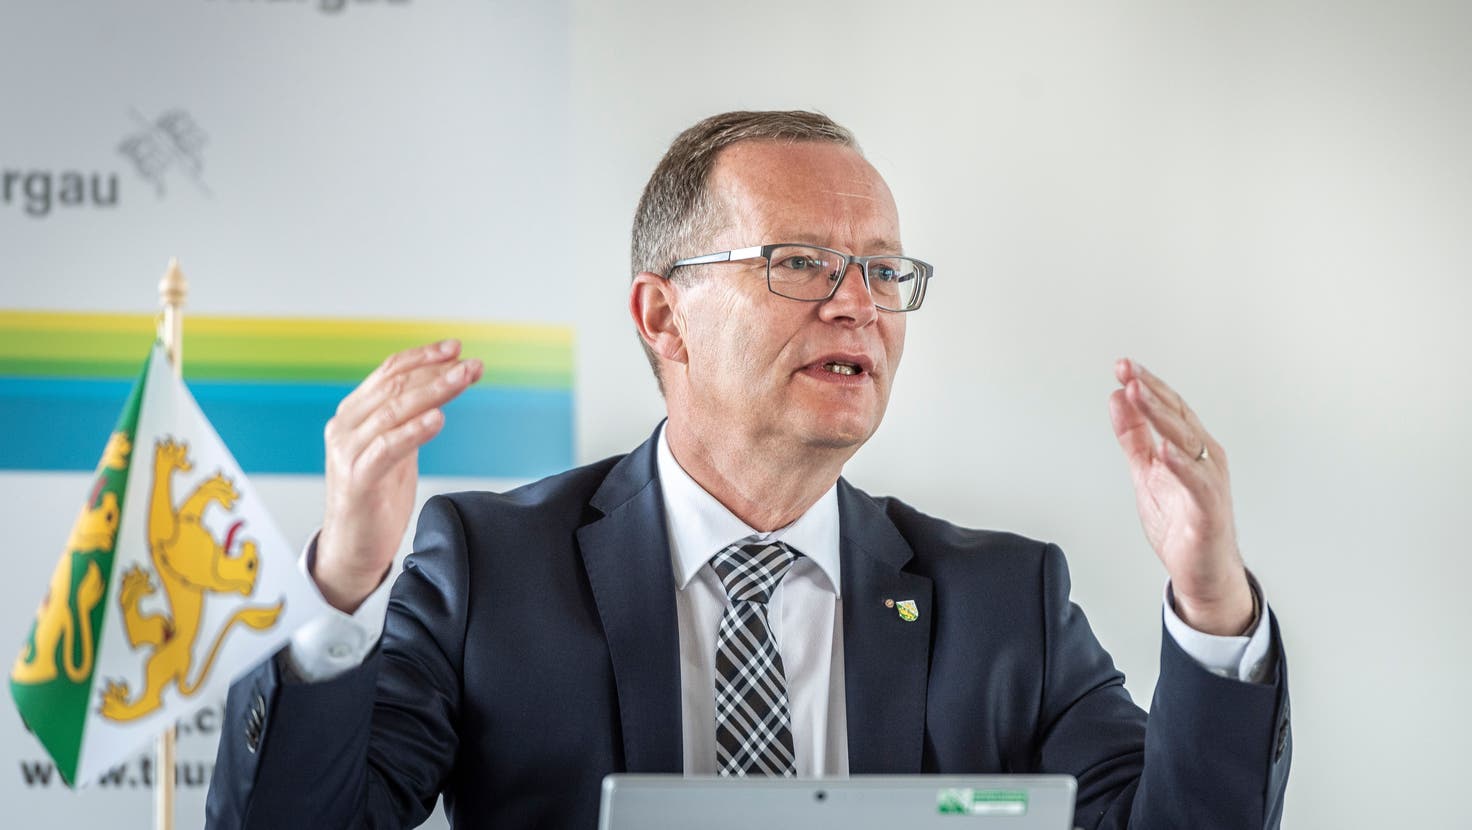 Der Thurgauer Regierungsrat Walter Schönholzer leitete im August 2017 die Taskforce, welche bei Ulrich K. die Hofräumung durchführte. (Andrea Stalder)